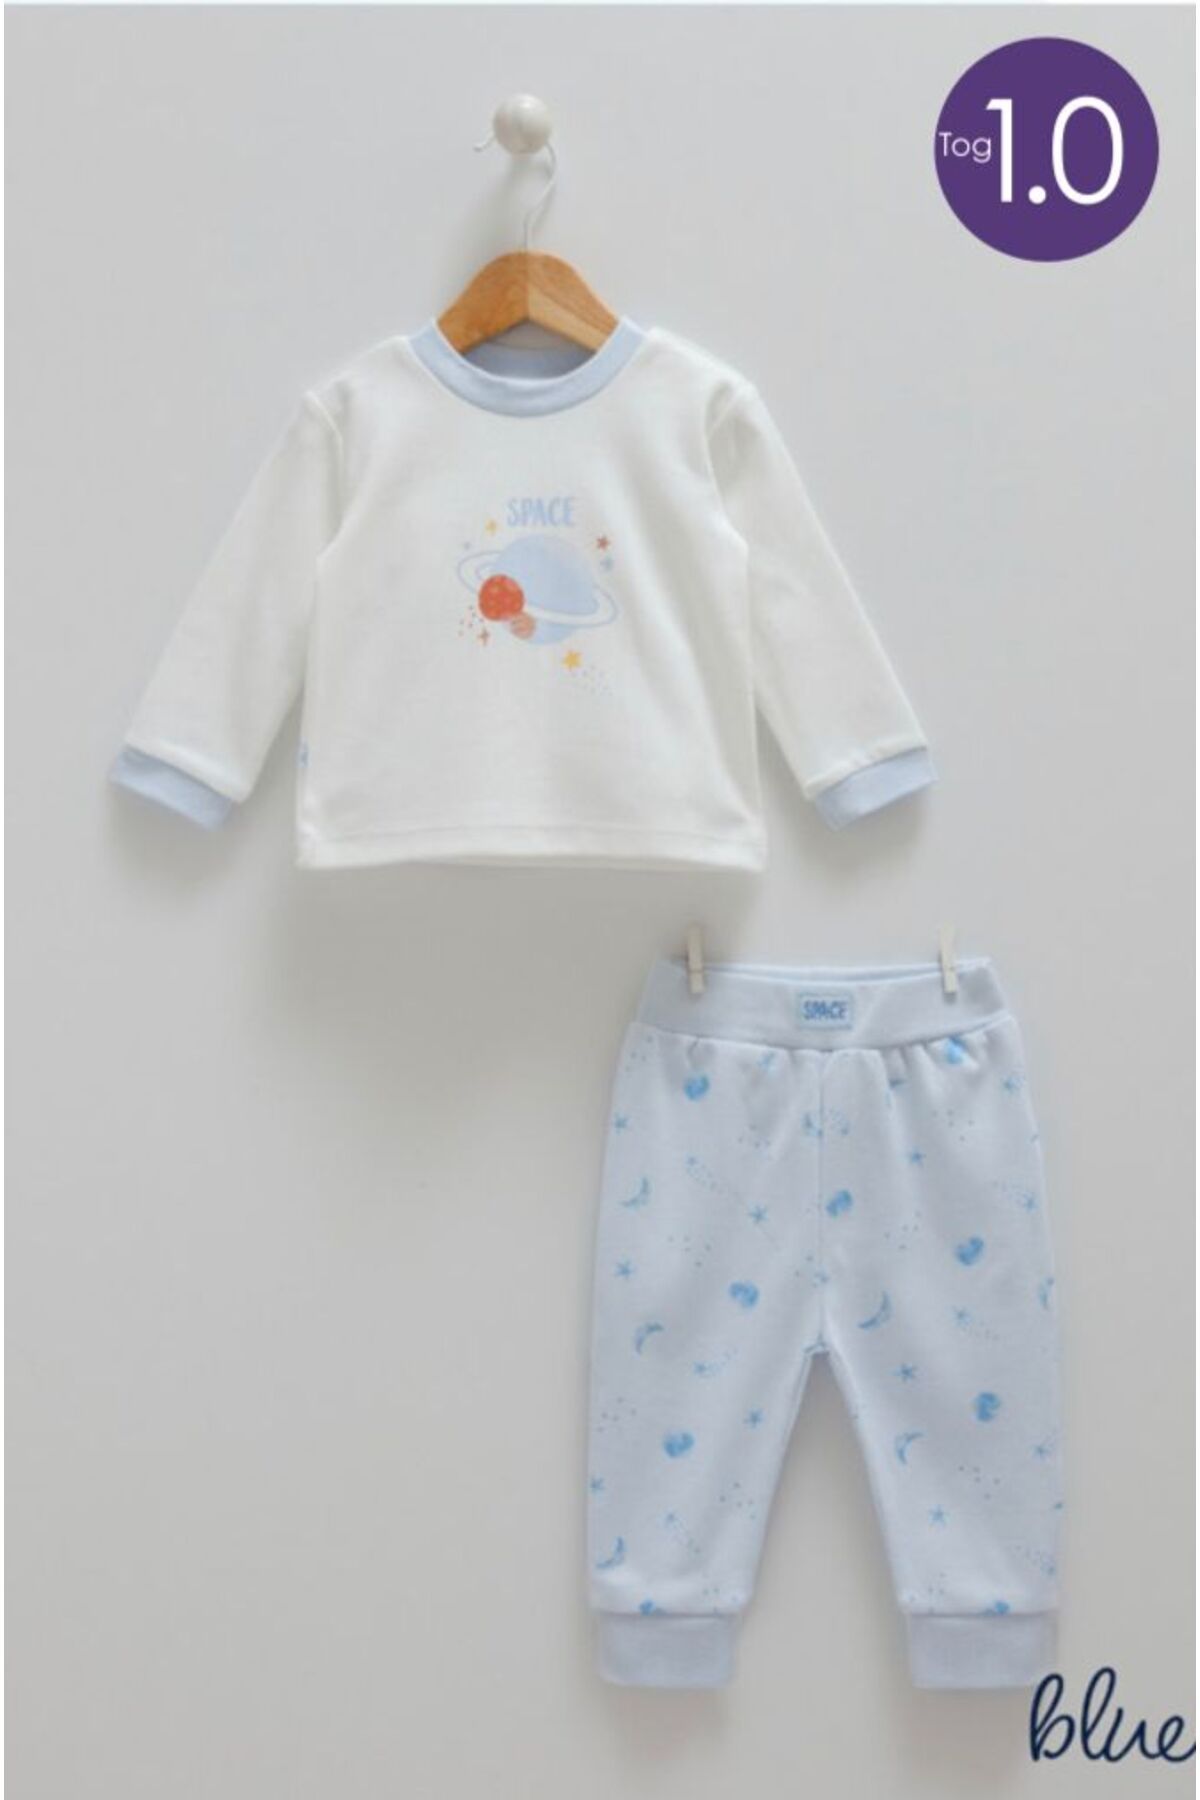 Caramell Baby&mother Mavi Tog 1.0 Pijama Takımı